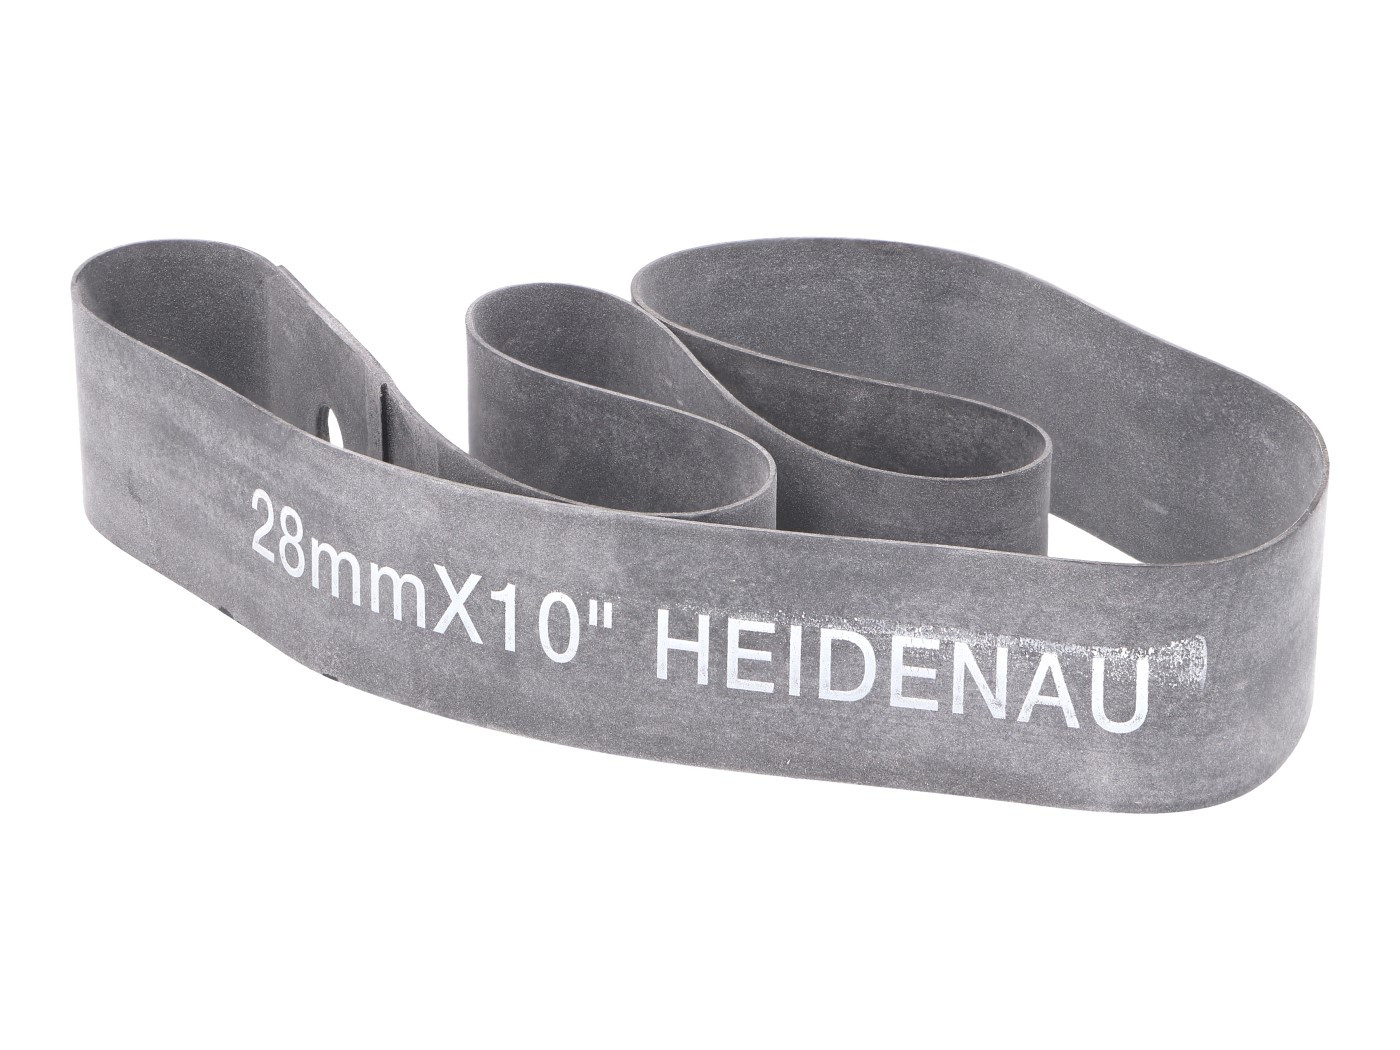 Heidenau 10"-os felniszalag - 28mm